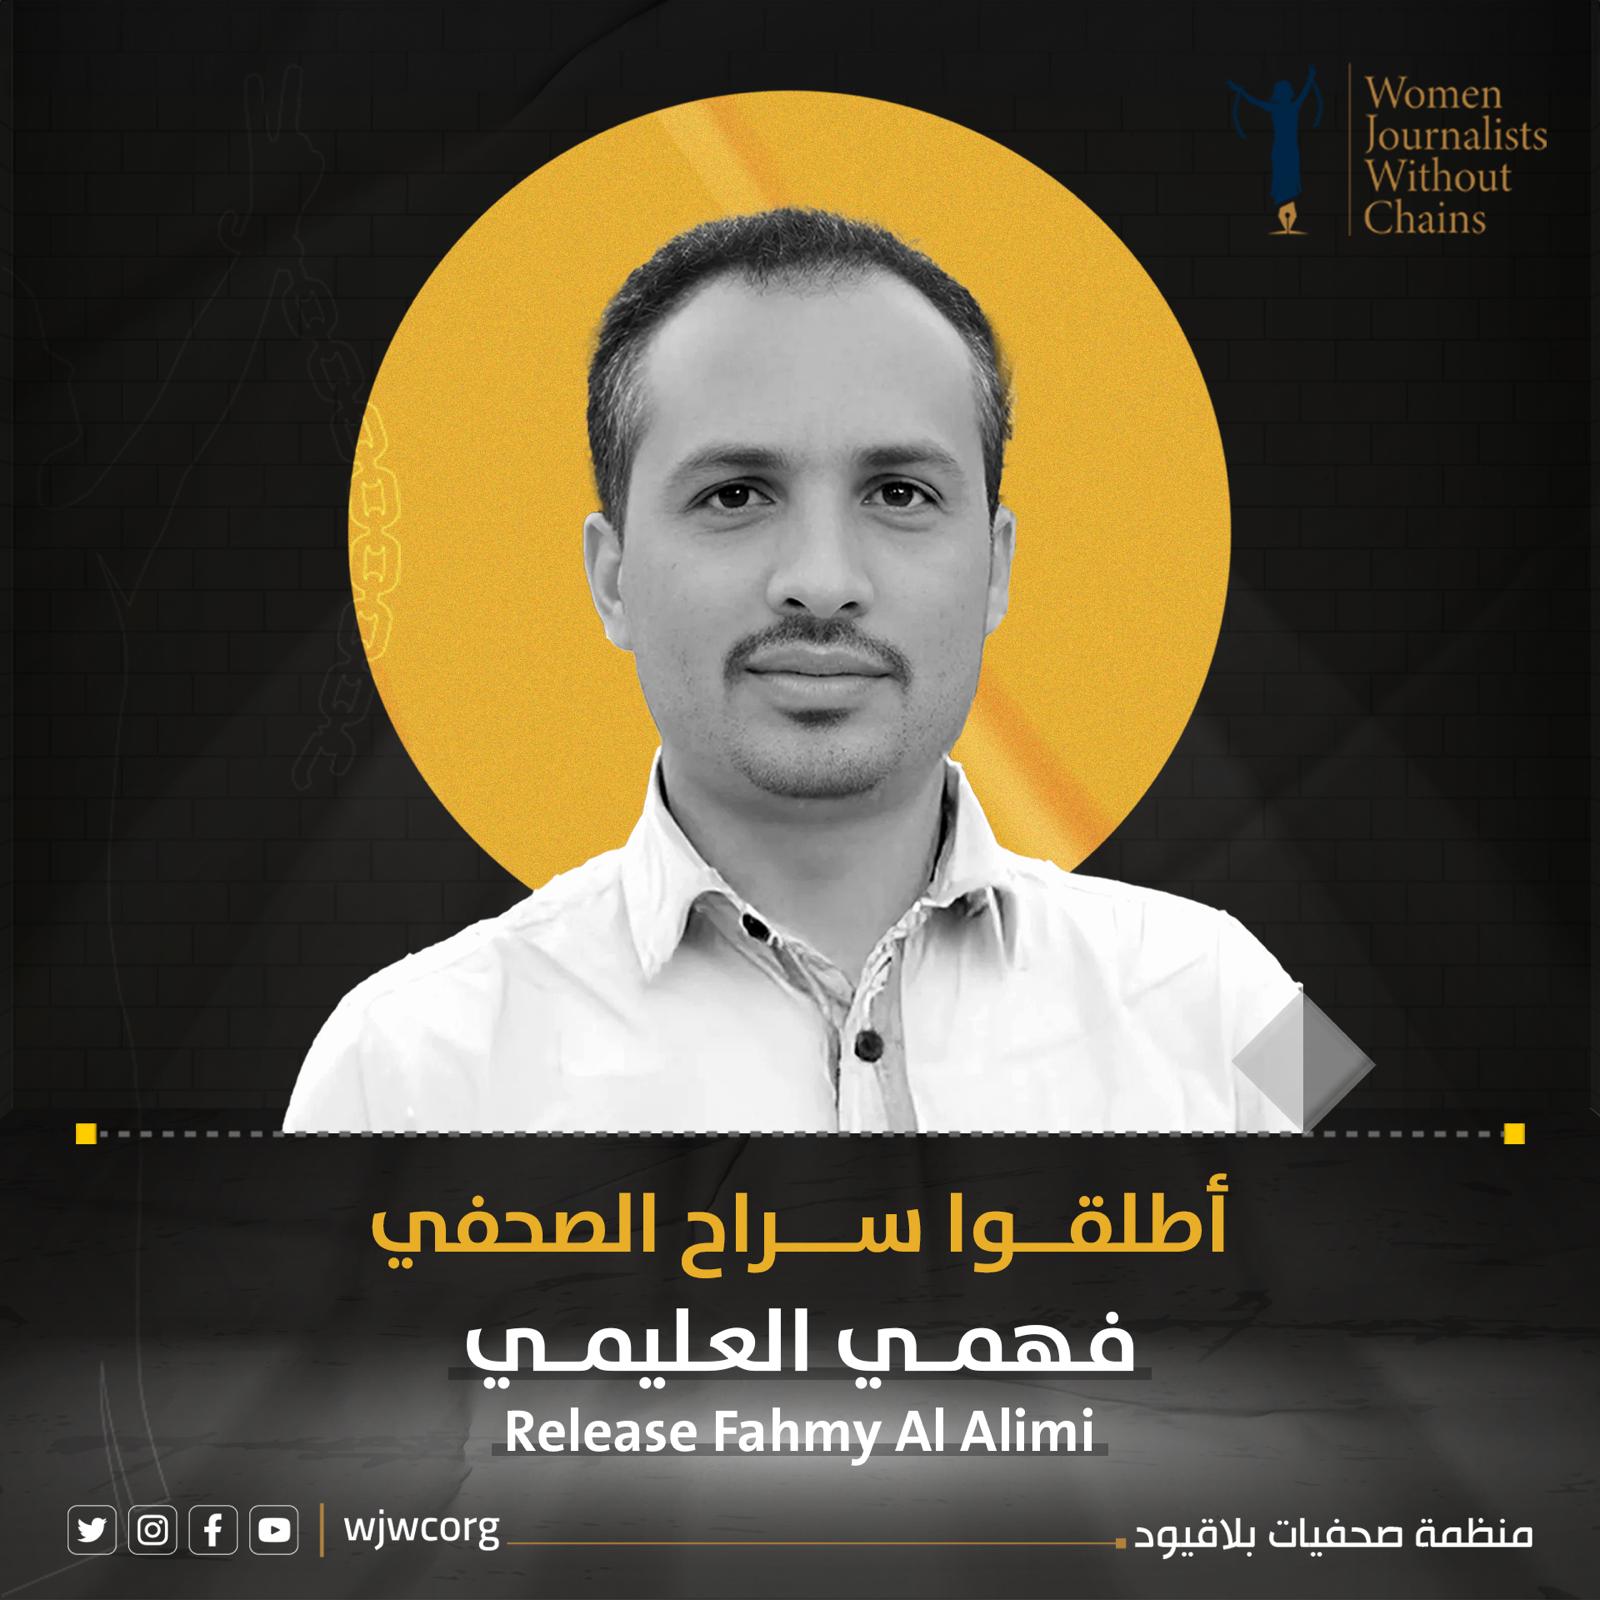 اليمن: صحفيات بلا قيود تدين اختطاف الصحفي فهمي العليمي 